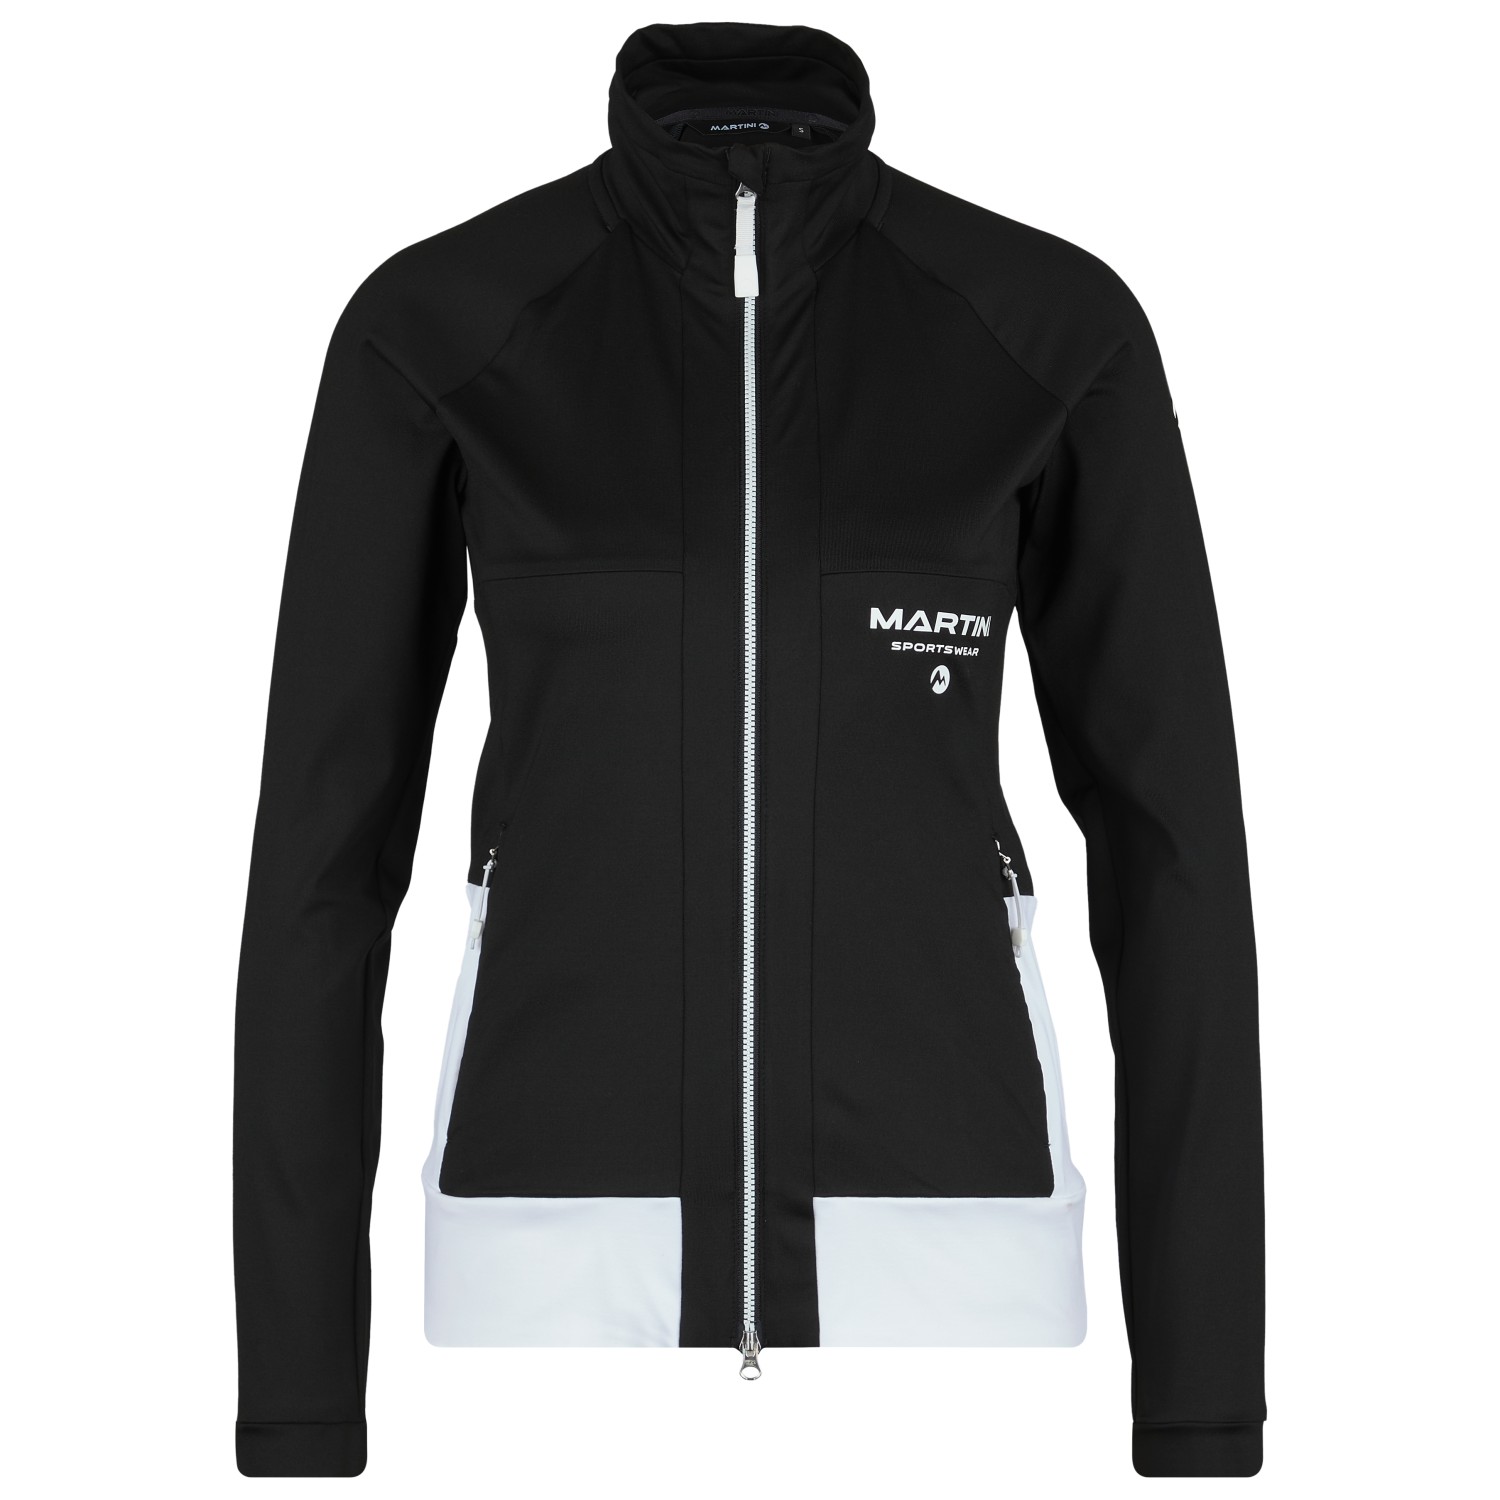 Флисовая жилетка Martini Women's Alpmate Midlayer, цвет black/black/white